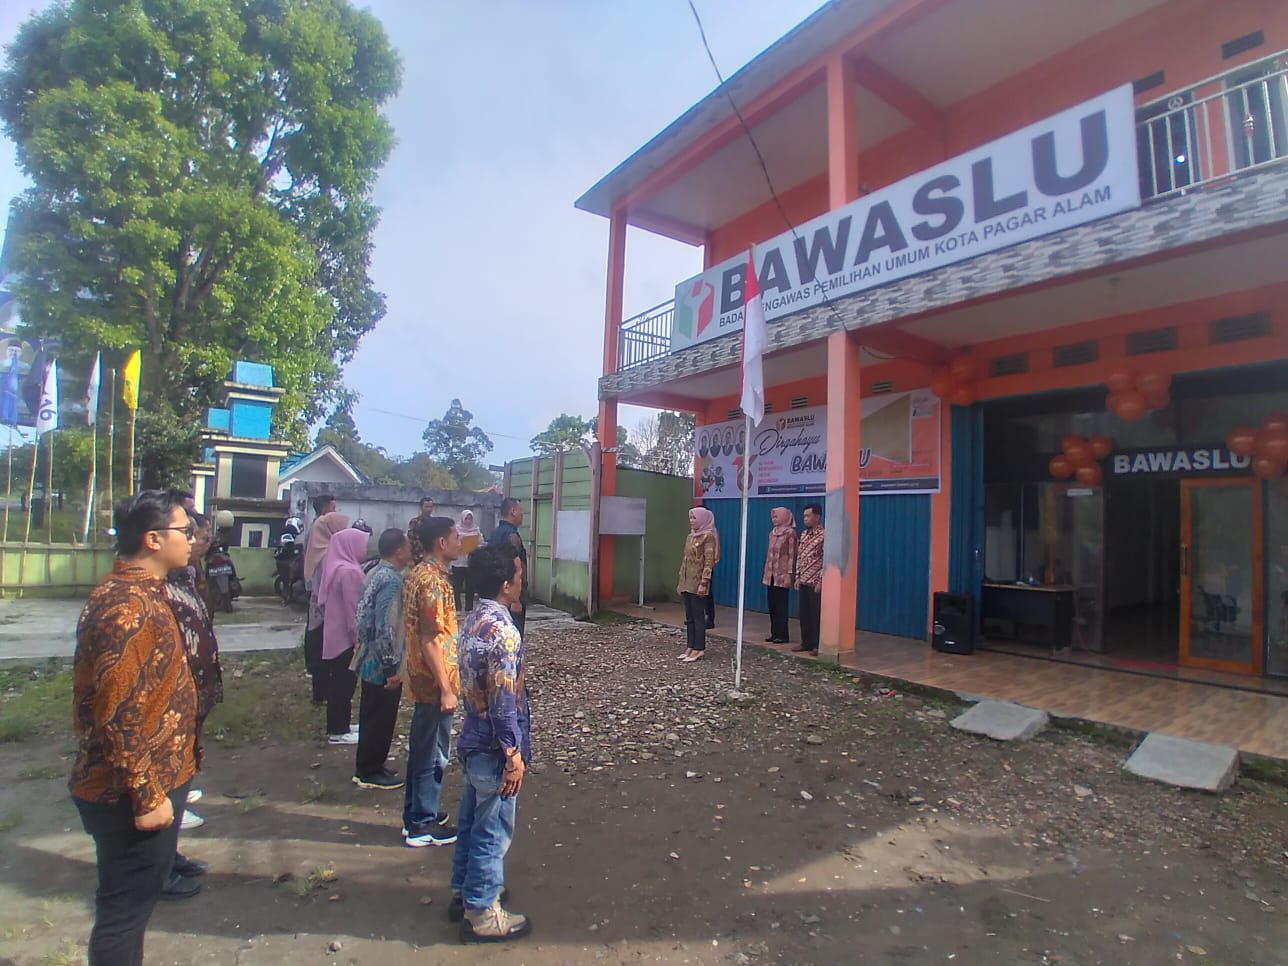 Bawaslu Kota Pagar Alam Memperkuat Integritas Pemilu Melalui Rekrutmen Panwaslu Kecamatan